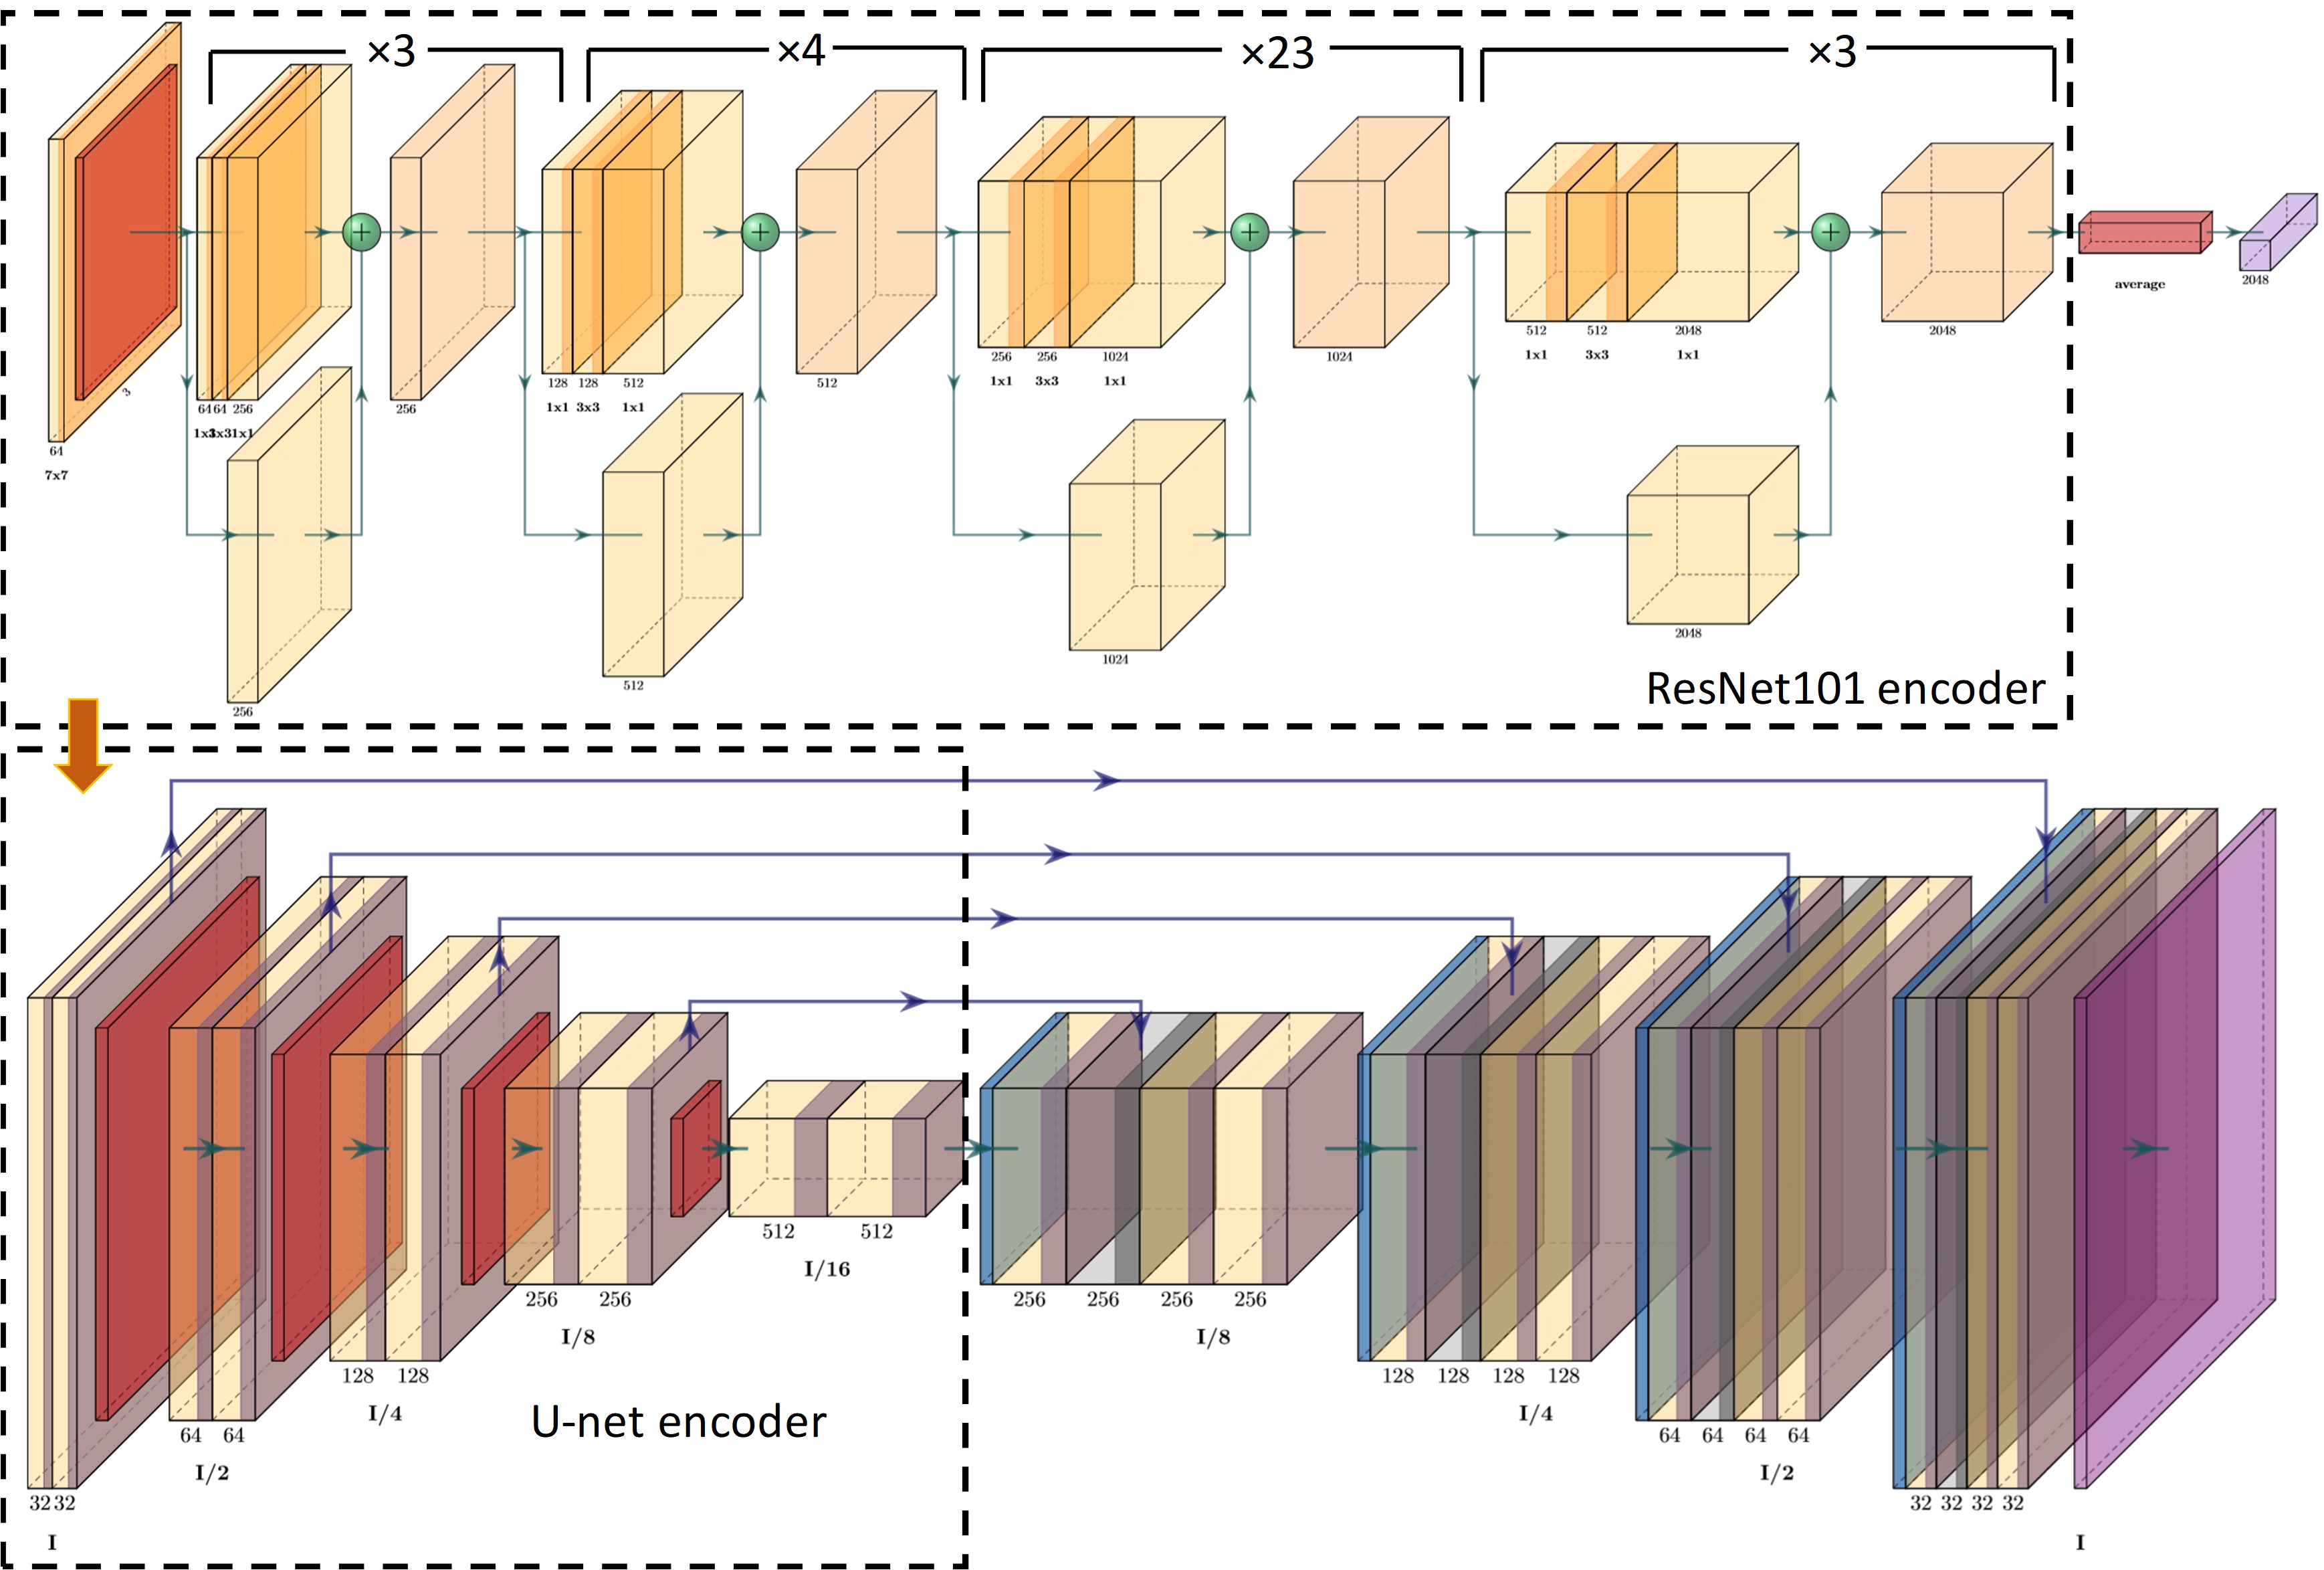 Схема архитектуры нейронной сети ResNet-101 + U-net для анализа РКТ-изображений почвы.